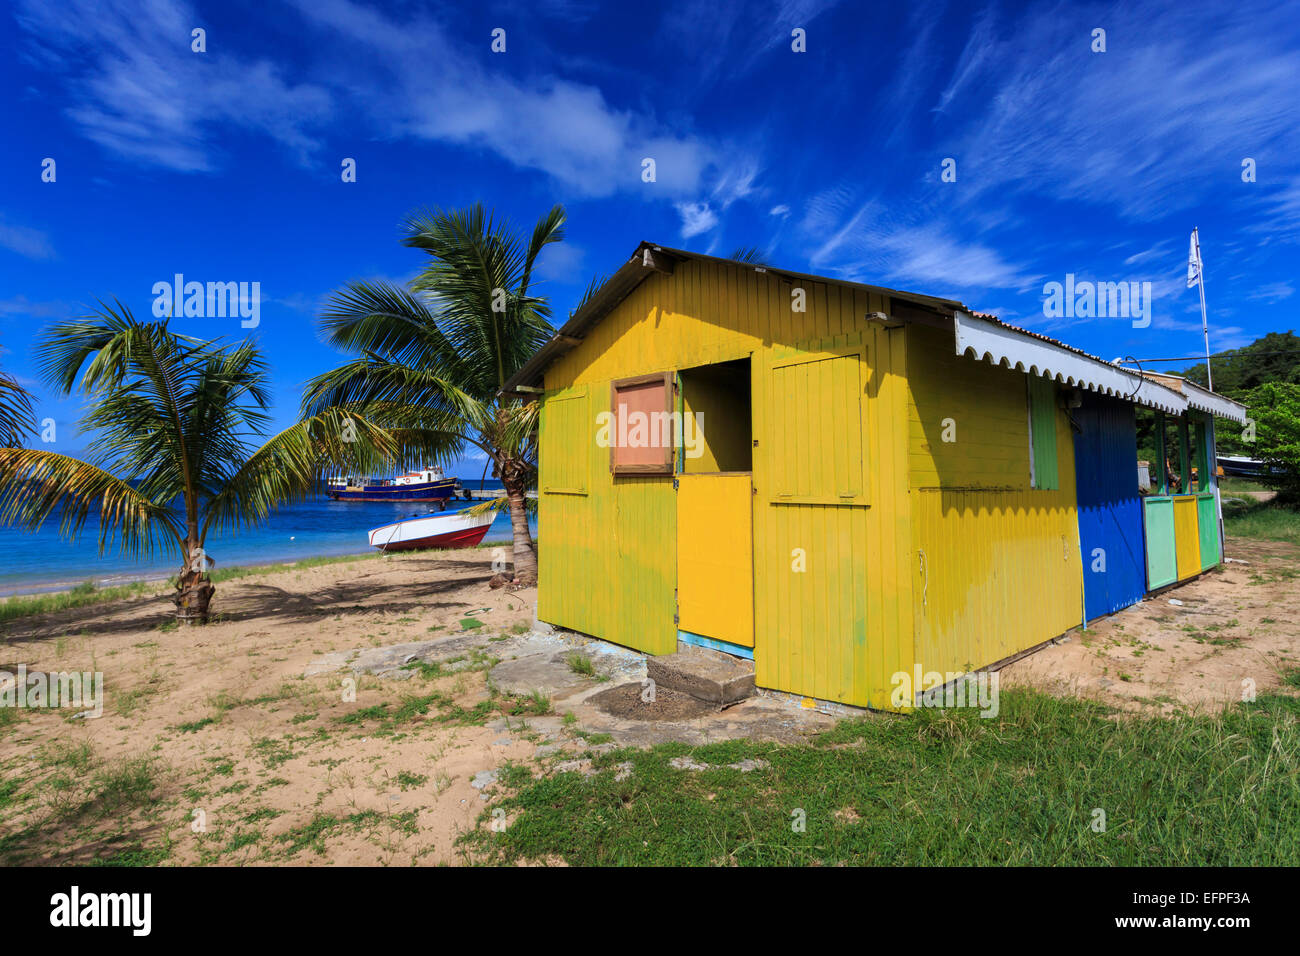 Colorido bar cabaña en la playa y los barcos, Salina Bay, Mayreau, granadinas de San Vicente, las Islas de Barlovento, Antillas, Caribe Foto de stock